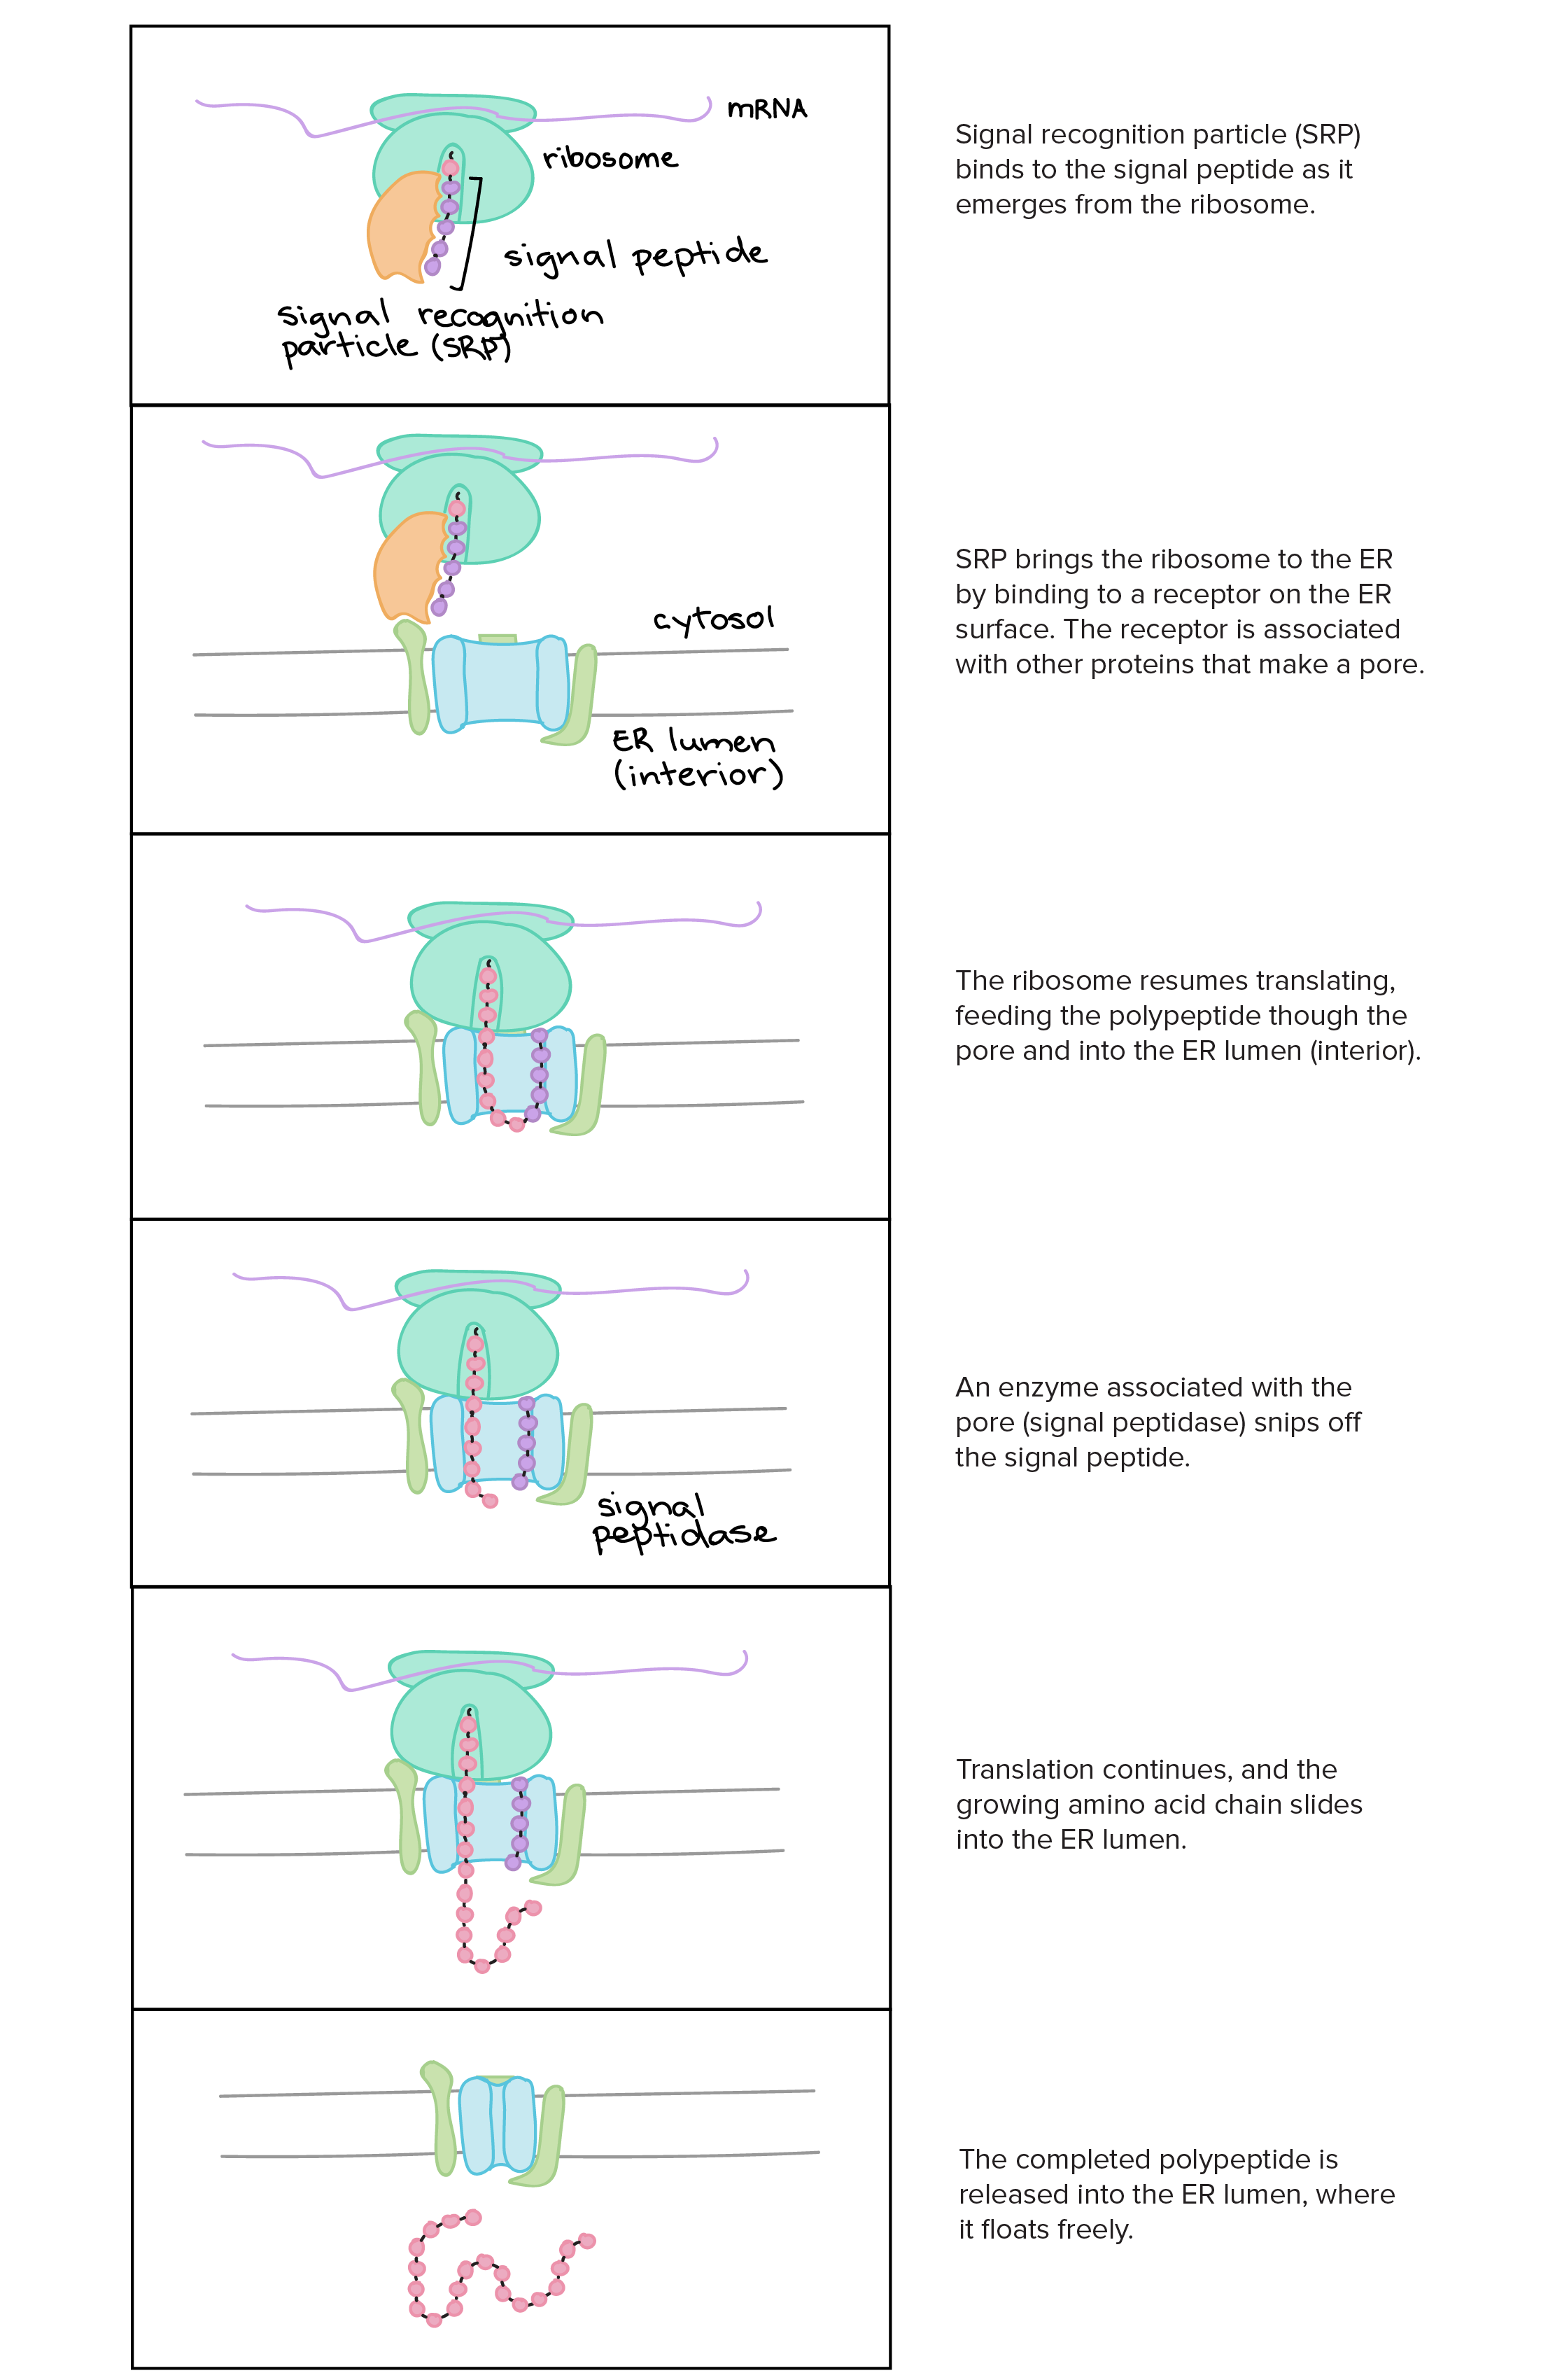 1. A Partícula Reconhecedora de Sinal (PRS) liga-se ao peptídeo sinal conforme ele emerge do ribossoma.

2. A PRS trás o ribossomo ao RE, ligando-se a um receptor na superfície do RE. O receptor está associado com 
outras proteínas que fazem um poro.

3. O ribossomo retoma a tradução, alimentando o polipeptídeo através do poro e para dentro do lúmen (interior) do RE.

4. Uma enzima associada com o poro corta o peptídeo sinal.

5. A tradução continua e a cadeia crescente de aminoácidos desliza para o interior do RE.

6. O polipeptídeo completo é liberado no lúmen do RE, onde fica flutuando livremente.